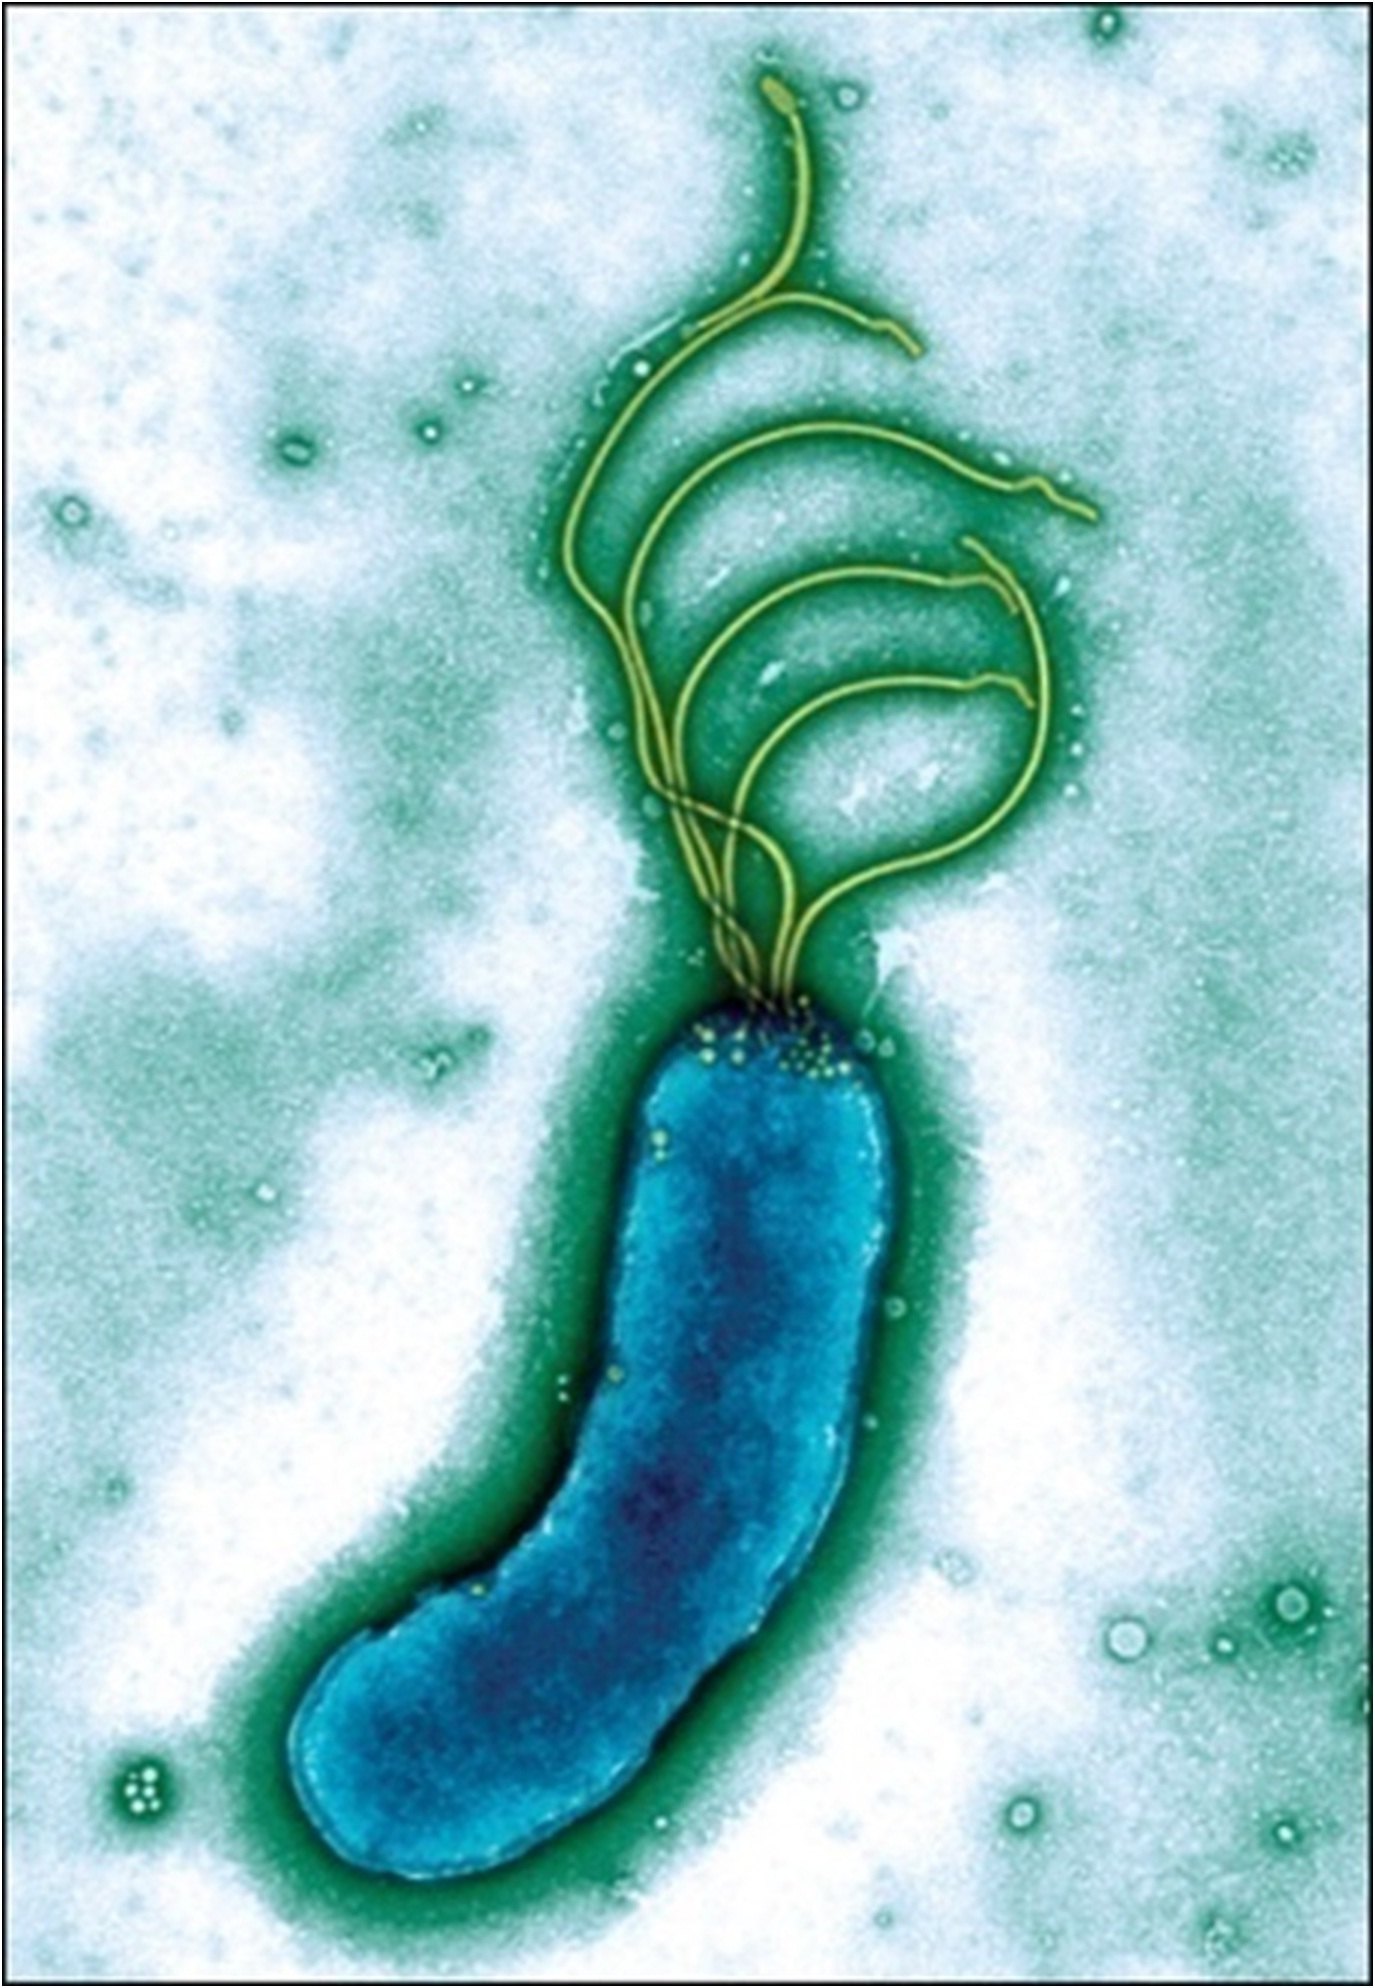 幽门螺杆菌红蓝铅笔图图片